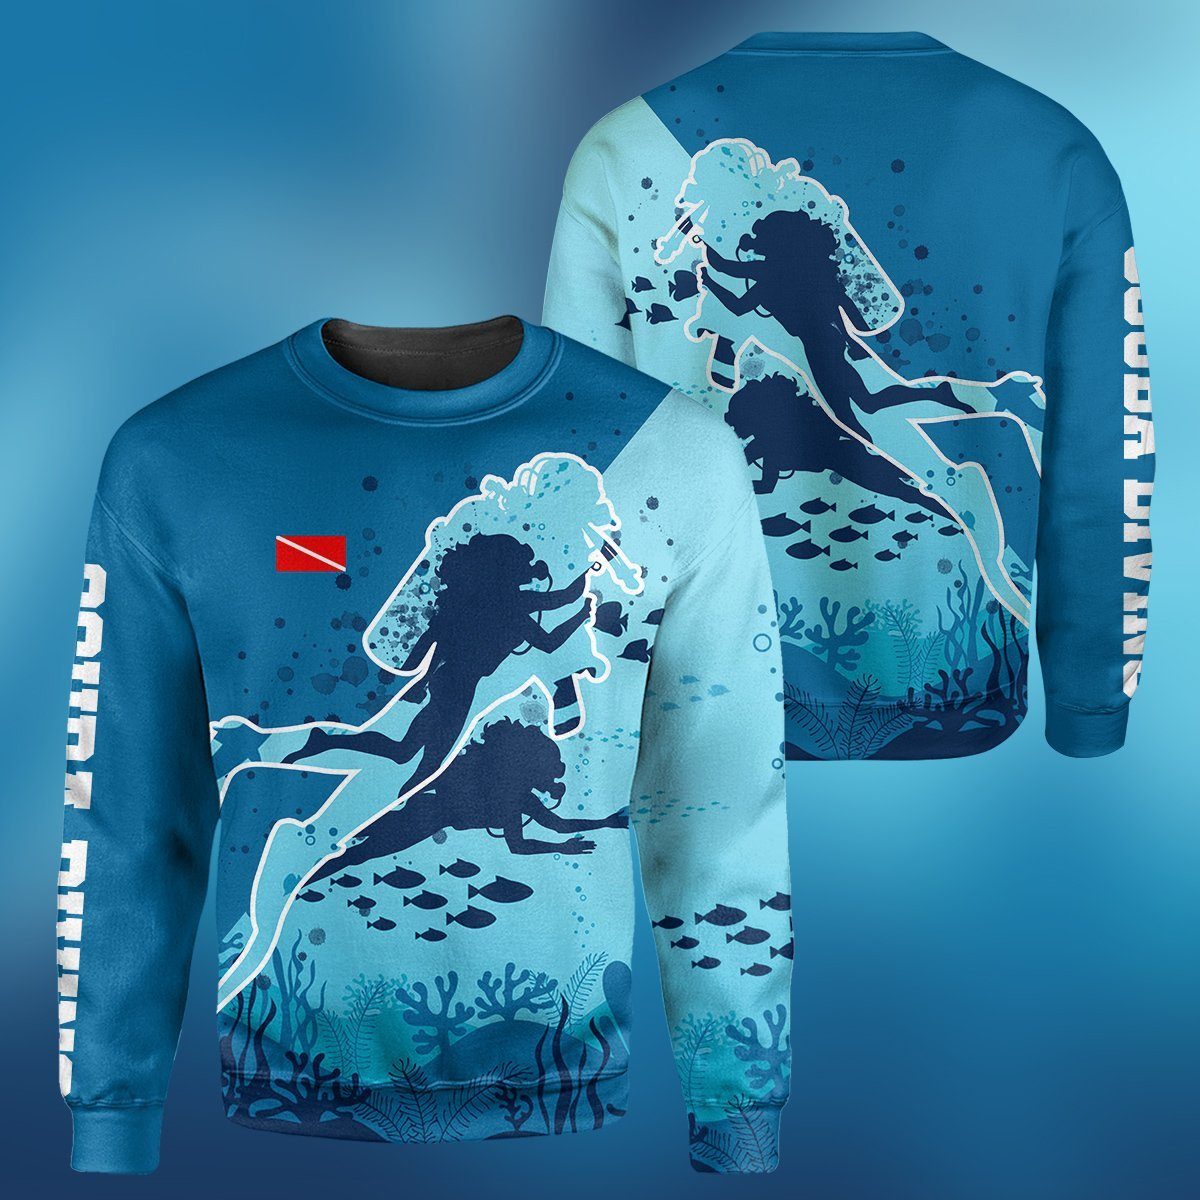 Gearhumans Scuba Diving Female Design - 3D All Over Printed Shirt shirt 3D Apparel LONG SLEEVE S 